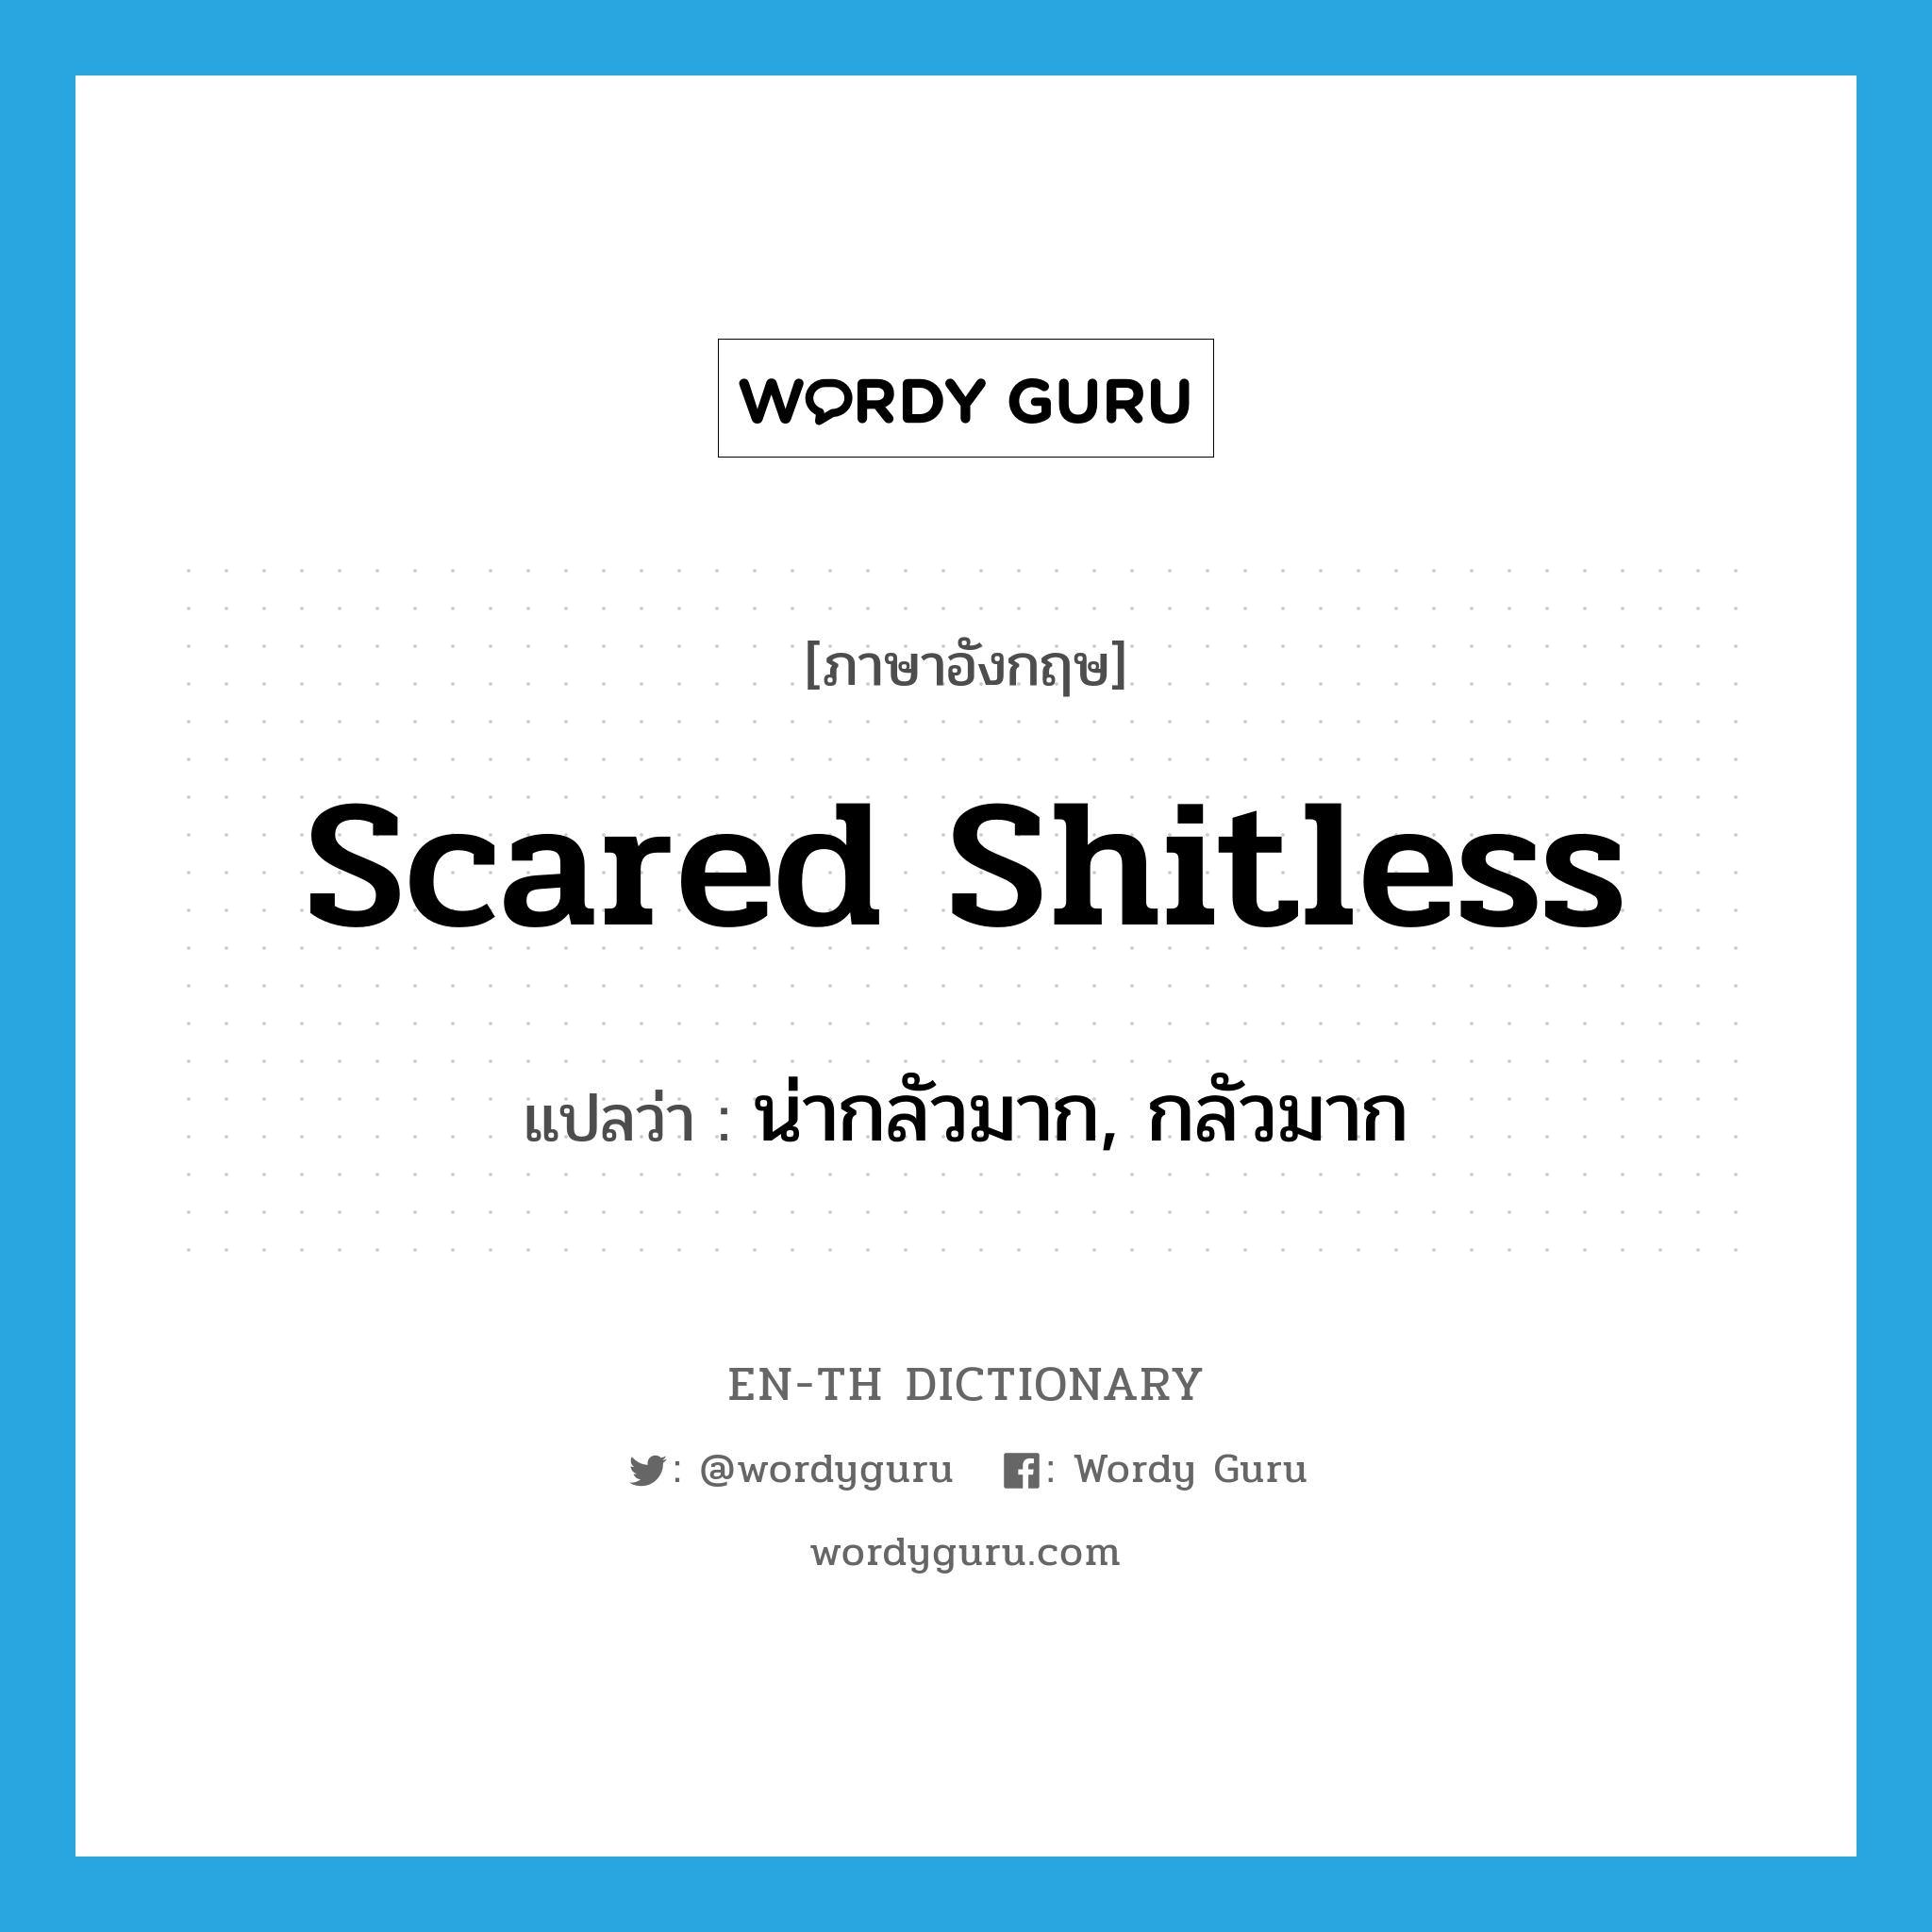 น่ากลัวมาก, กลัวมาก ภาษาอังกฤษ?, คำศัพท์ภาษาอังกฤษ น่ากลัวมาก, กลัวมาก แปลว่า scared shitless ประเภท SL หมวด SL